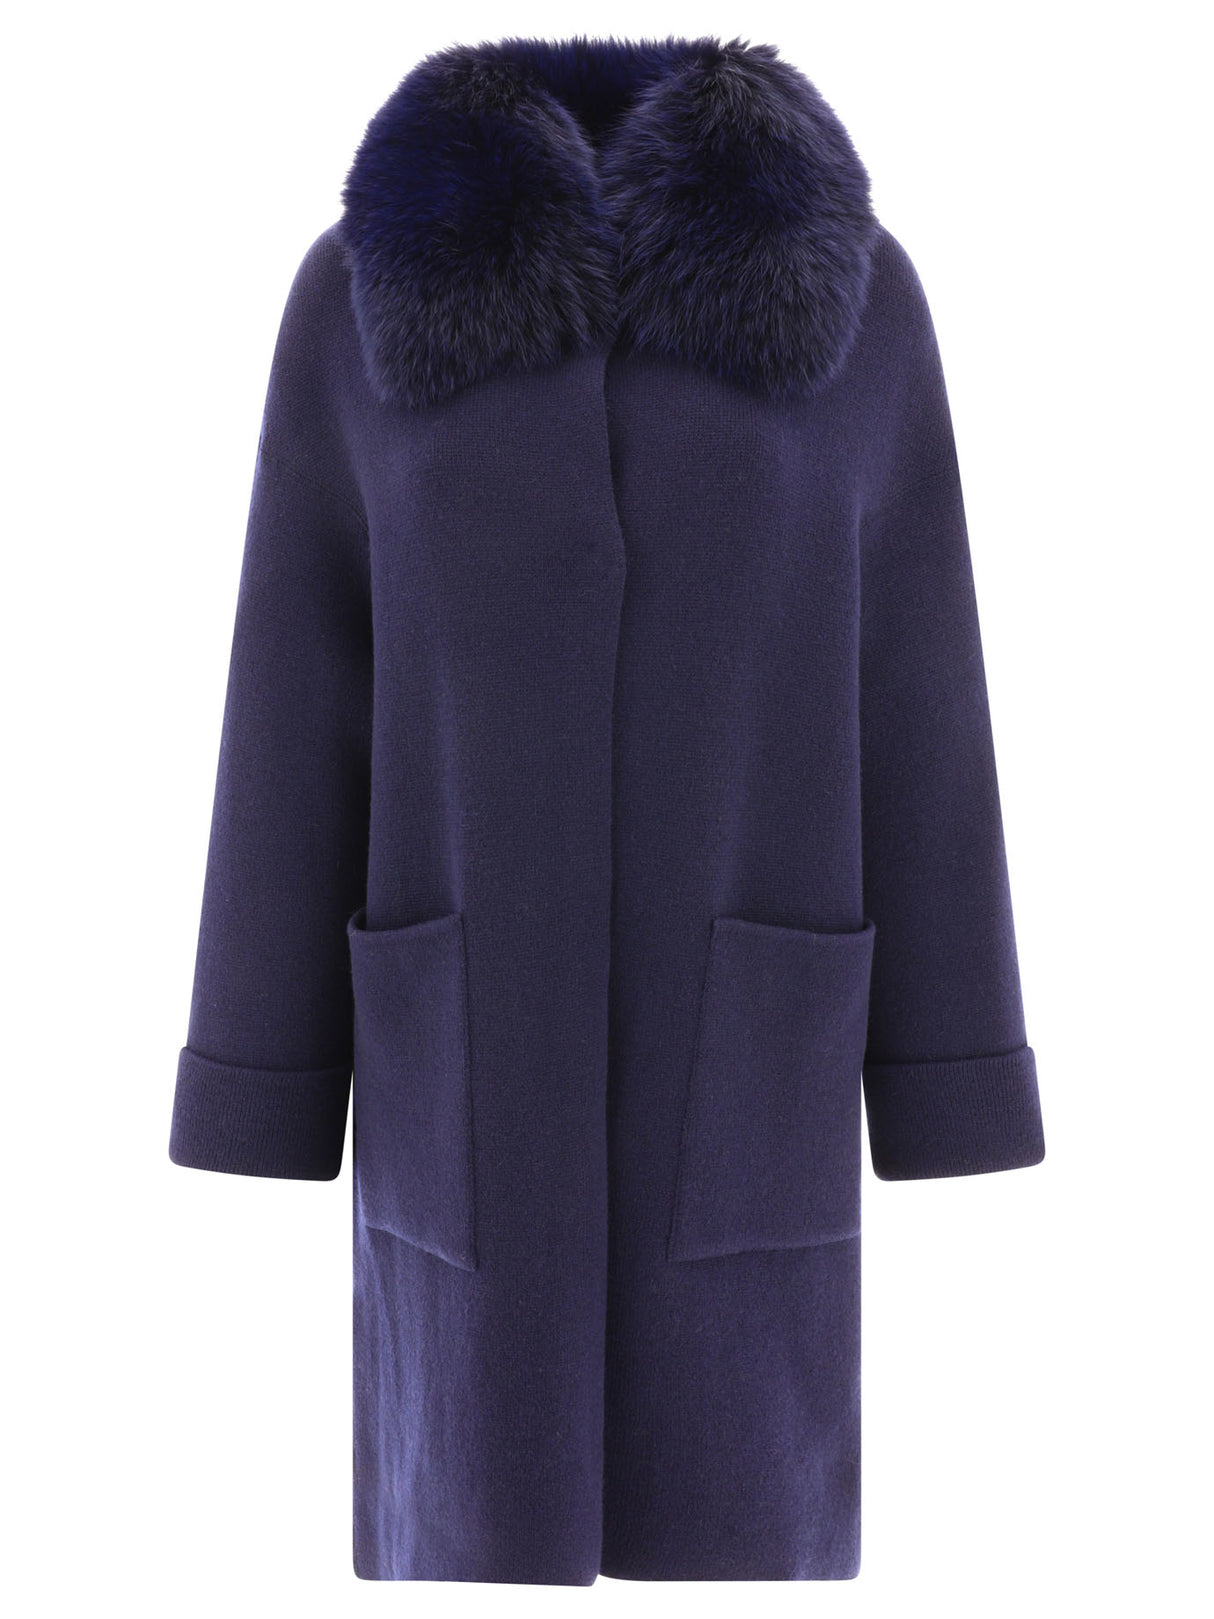 Áo khoác len và cashmere xanh dành cho nữ - Bộ sưu tập mùa FW23